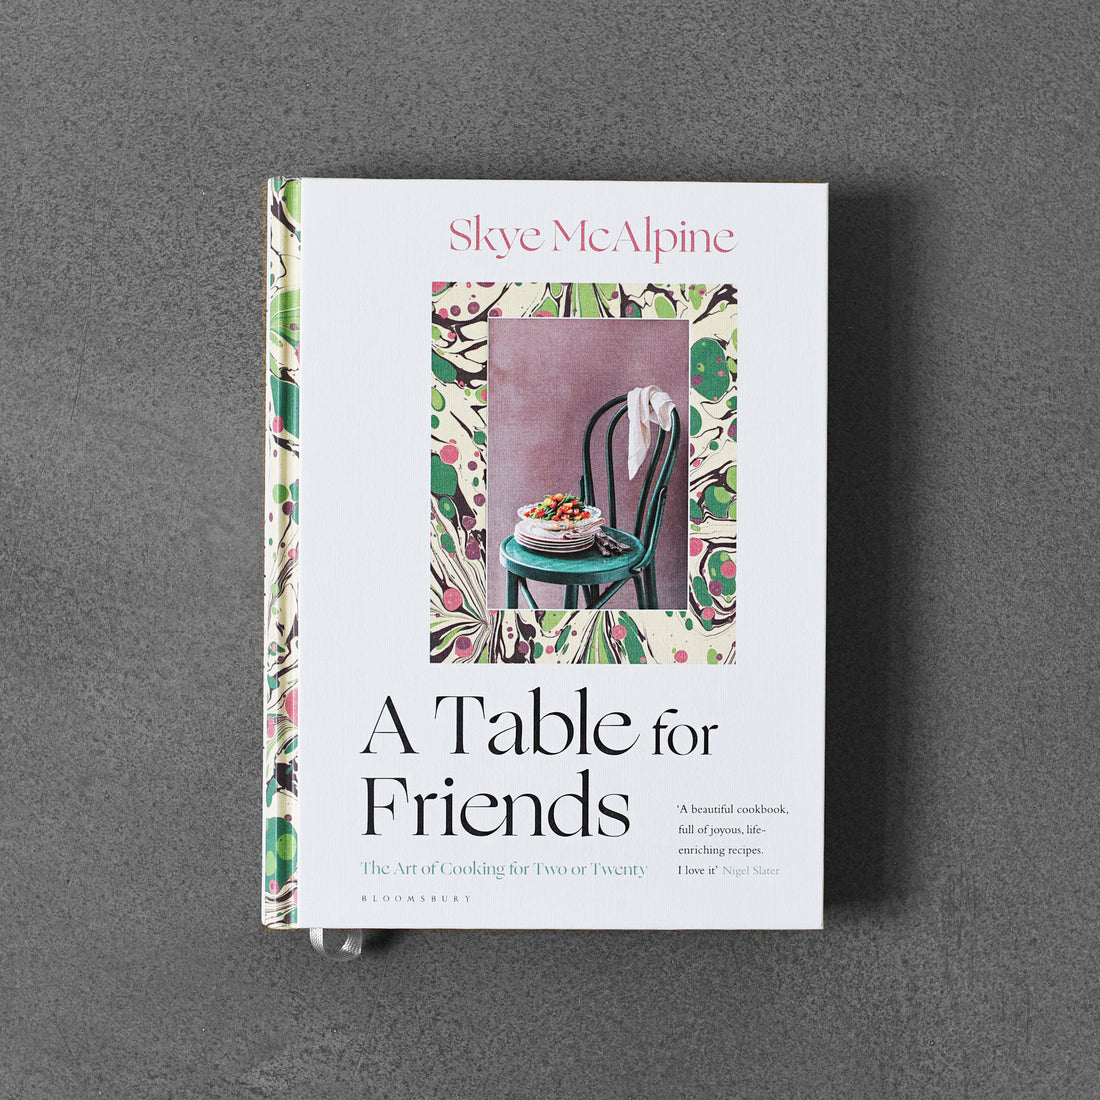 Stół dla przyjaciół: sztuka gotowania dla dwojga lub dwudziestu osób - Skye McAlpine